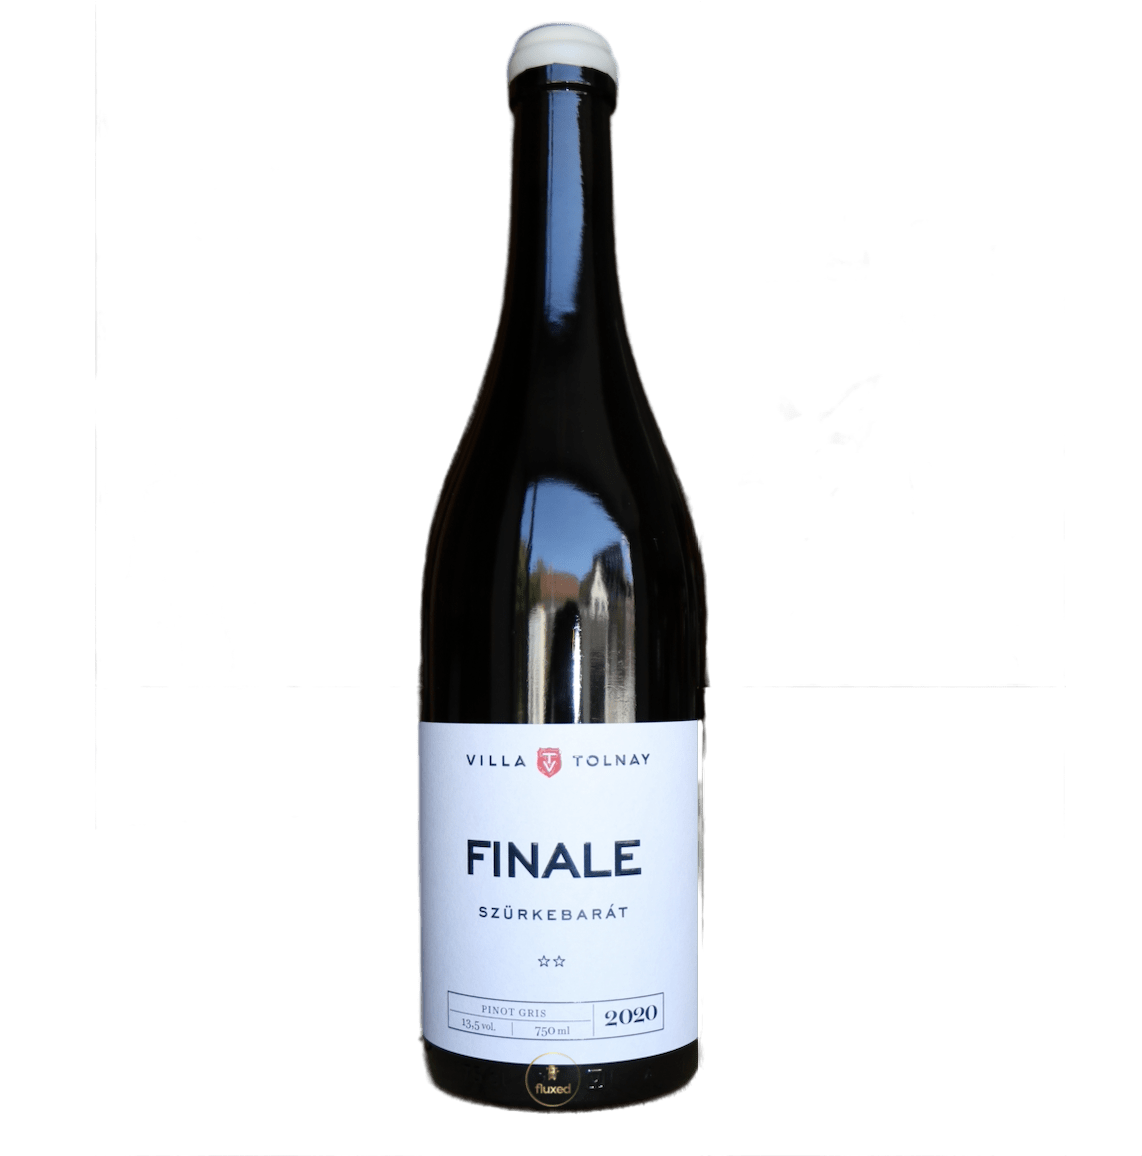 Balatoni Pinot Gris "Finale" 2020 ** - Nur CHF 22.50! Jetzt kaufen auf fluxed.ch